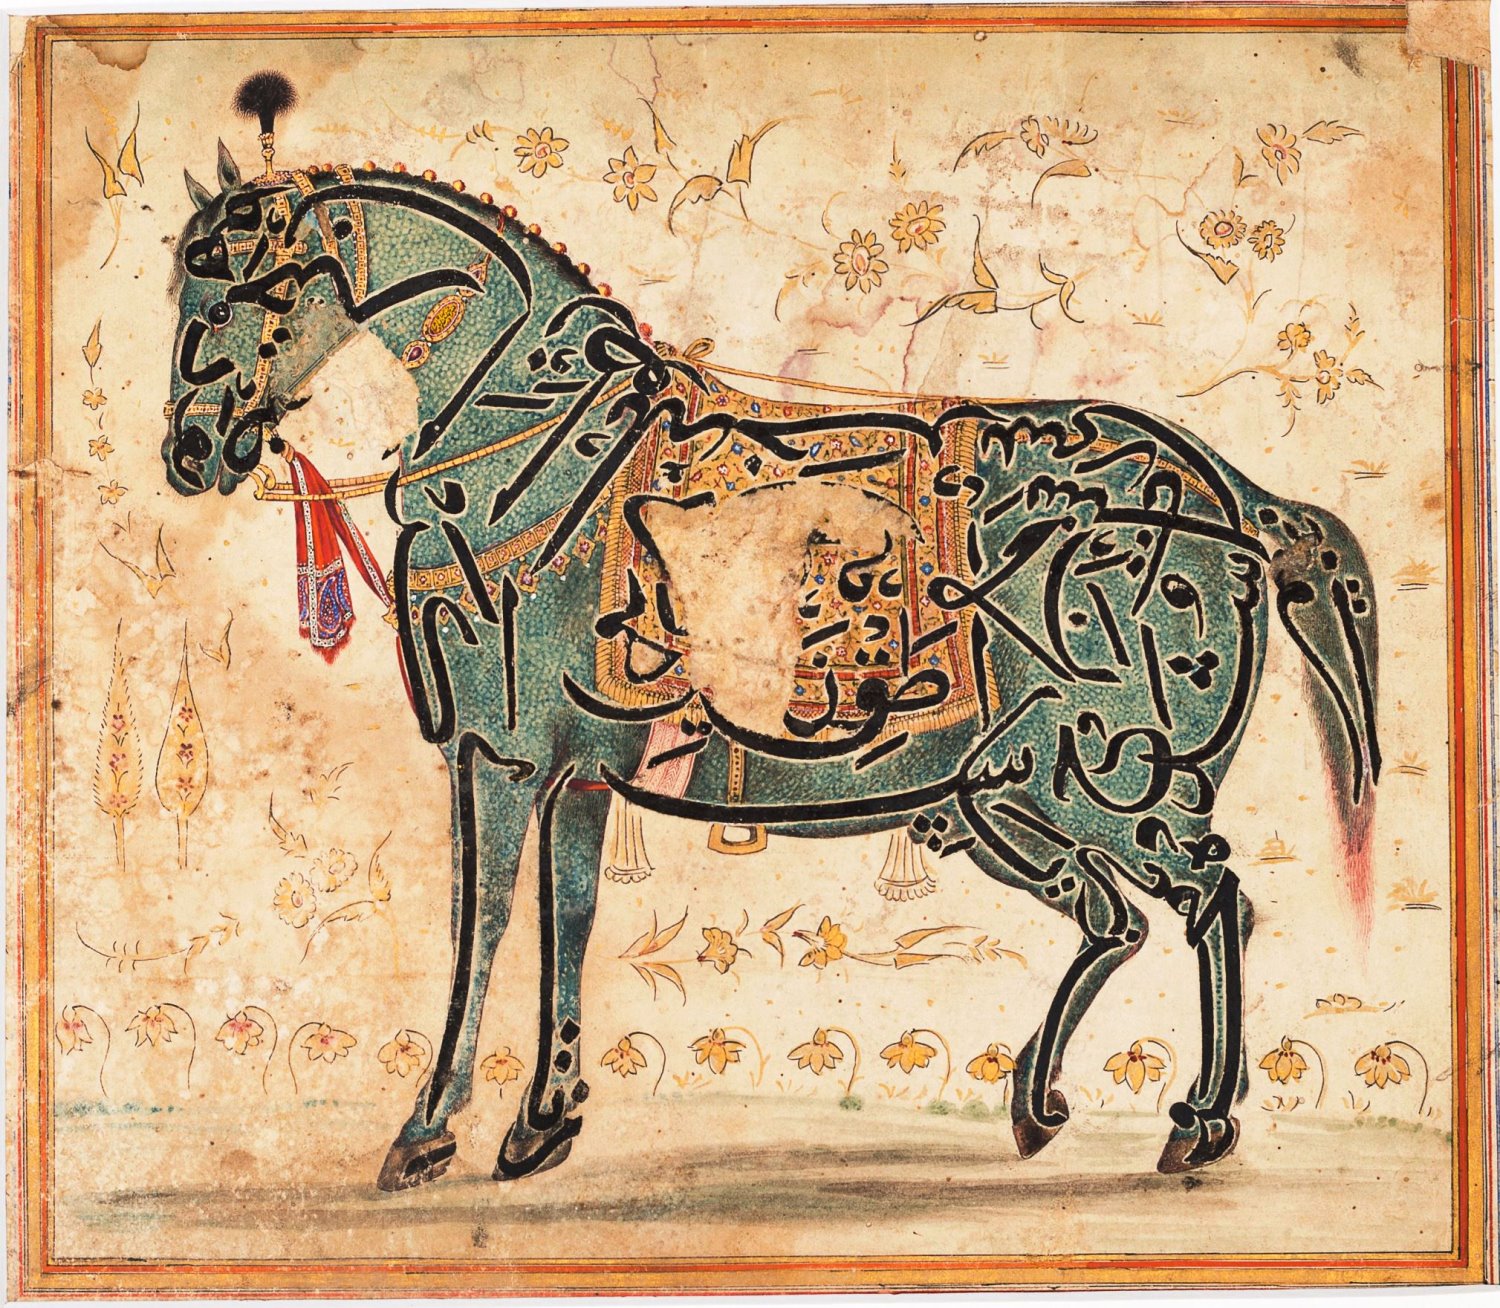 כתובת דמוית סוס, הודו המאה ה 17. באדיבות מוזאון ישראל , ירושלים. צילום פטר לני peter lanyi